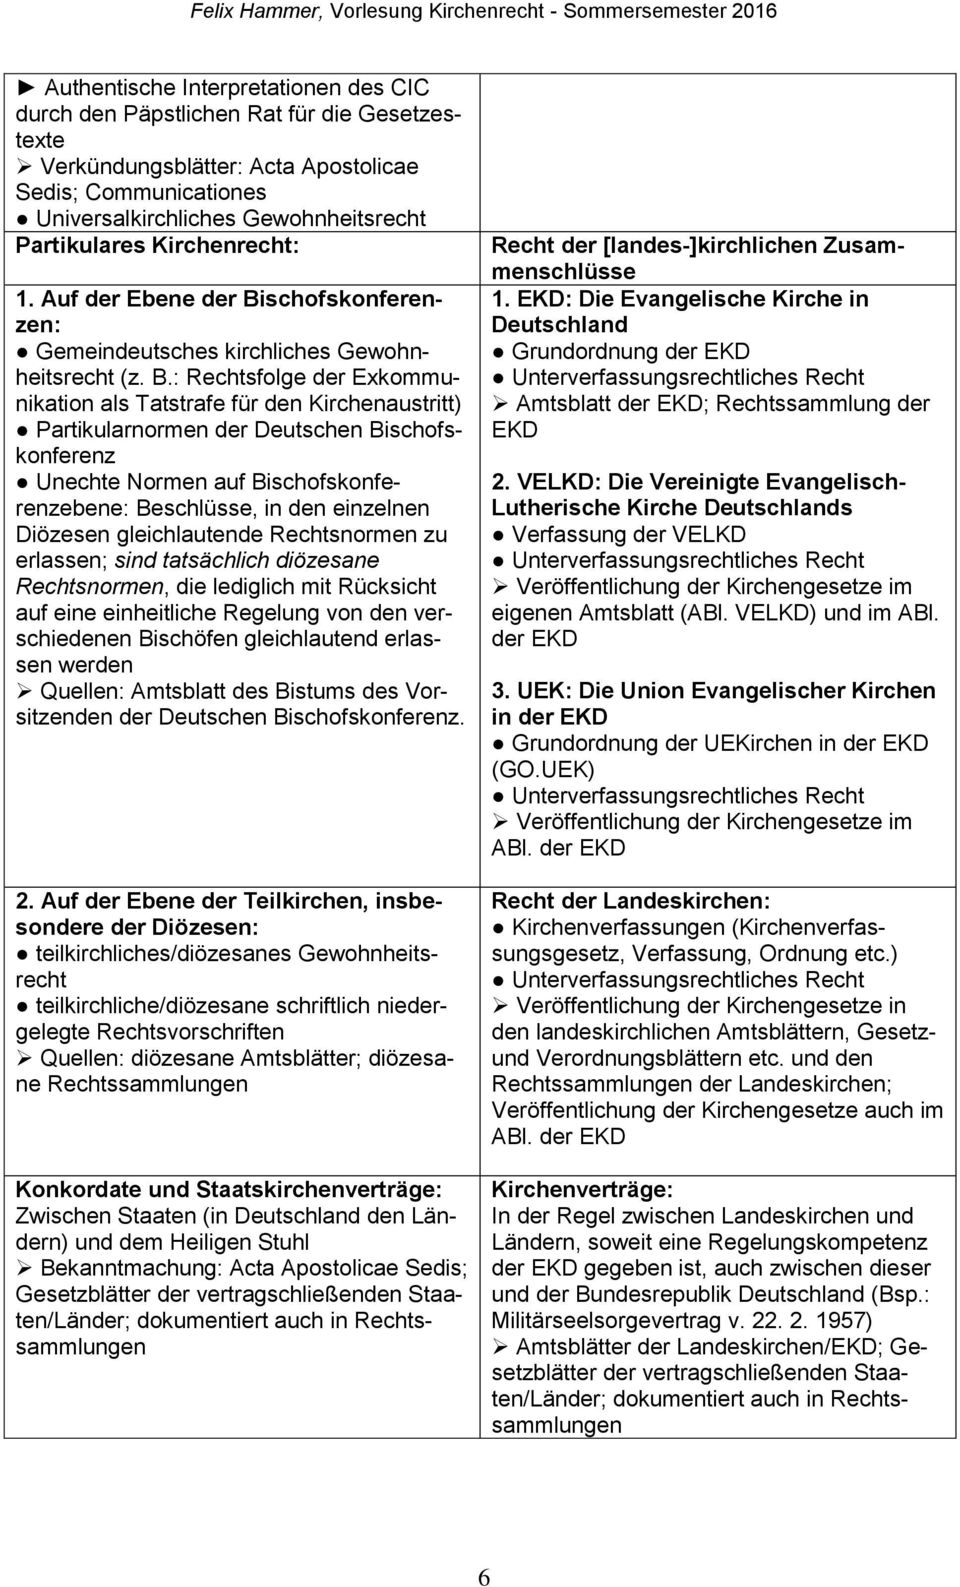 schofskonferenzen: Gemeindeutsches kirchliches Gewohnheitsrecht (z. B.